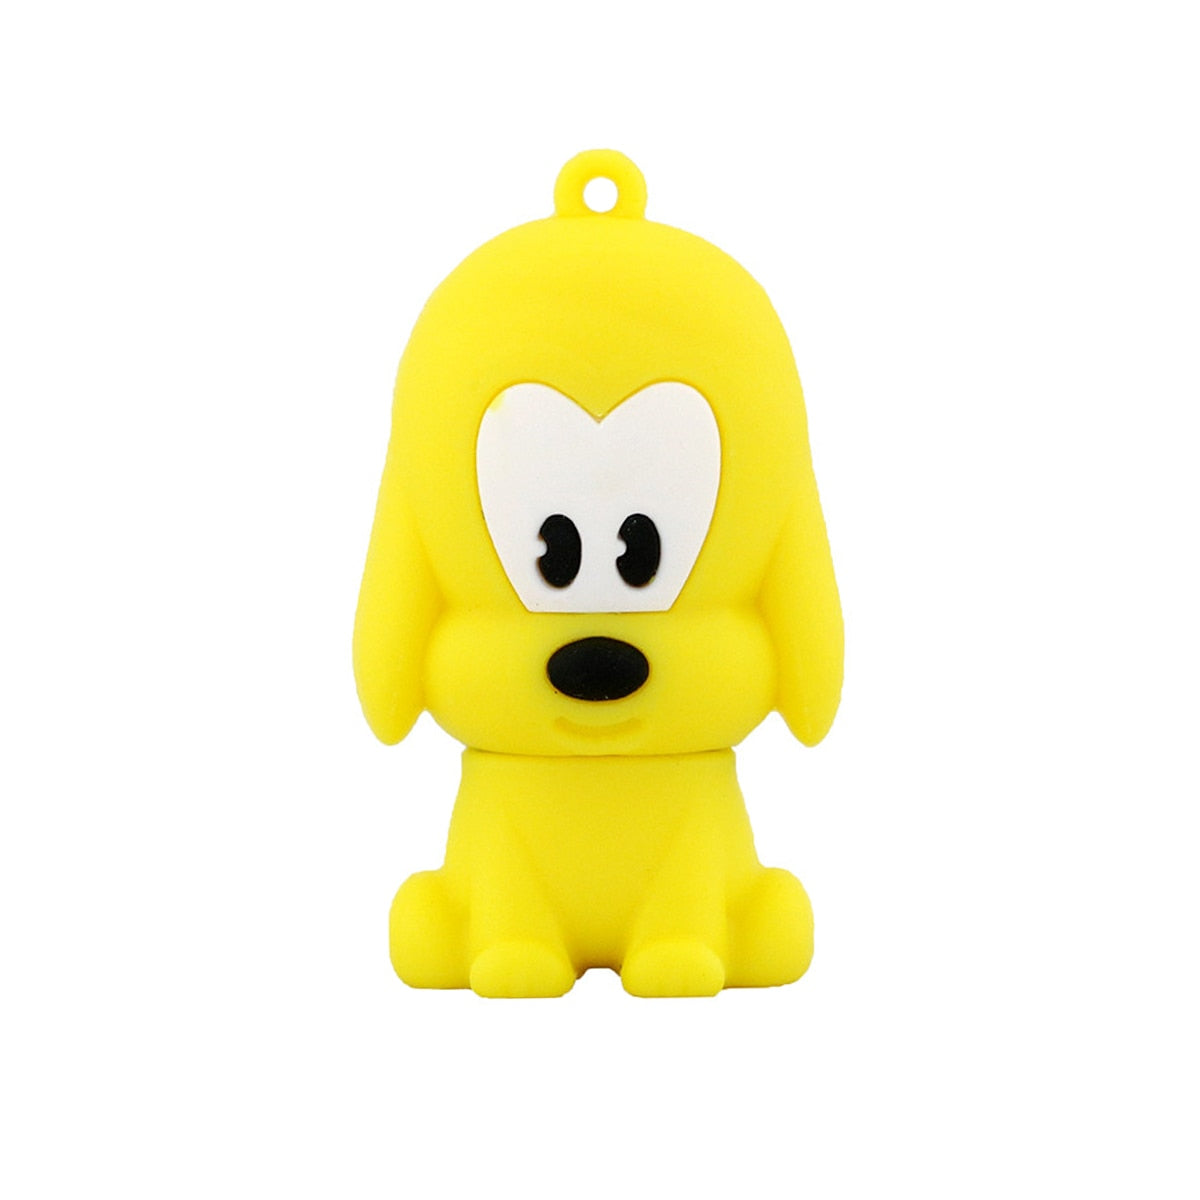 1PC Kawaii Dog Collection USB Memory Stick